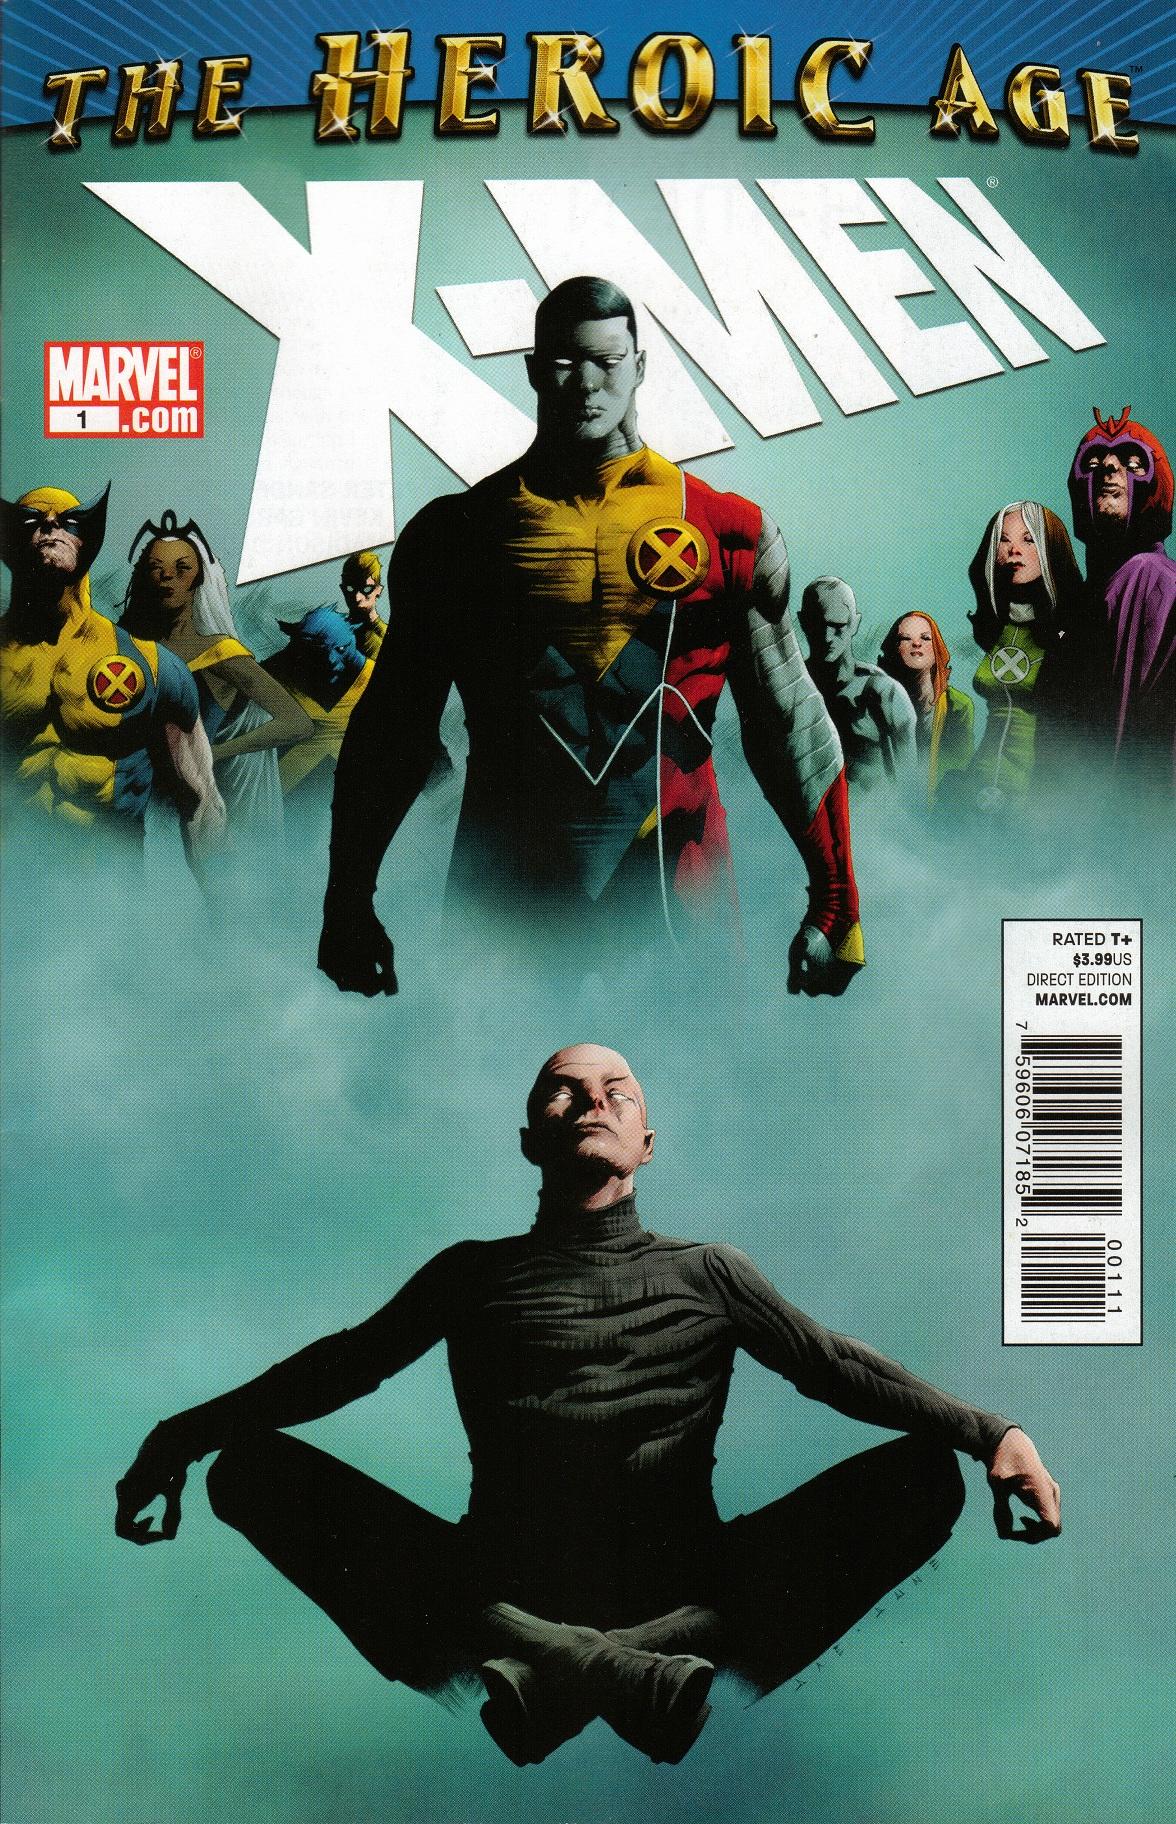 Heroic Age: X-Men Vol. 1 #1